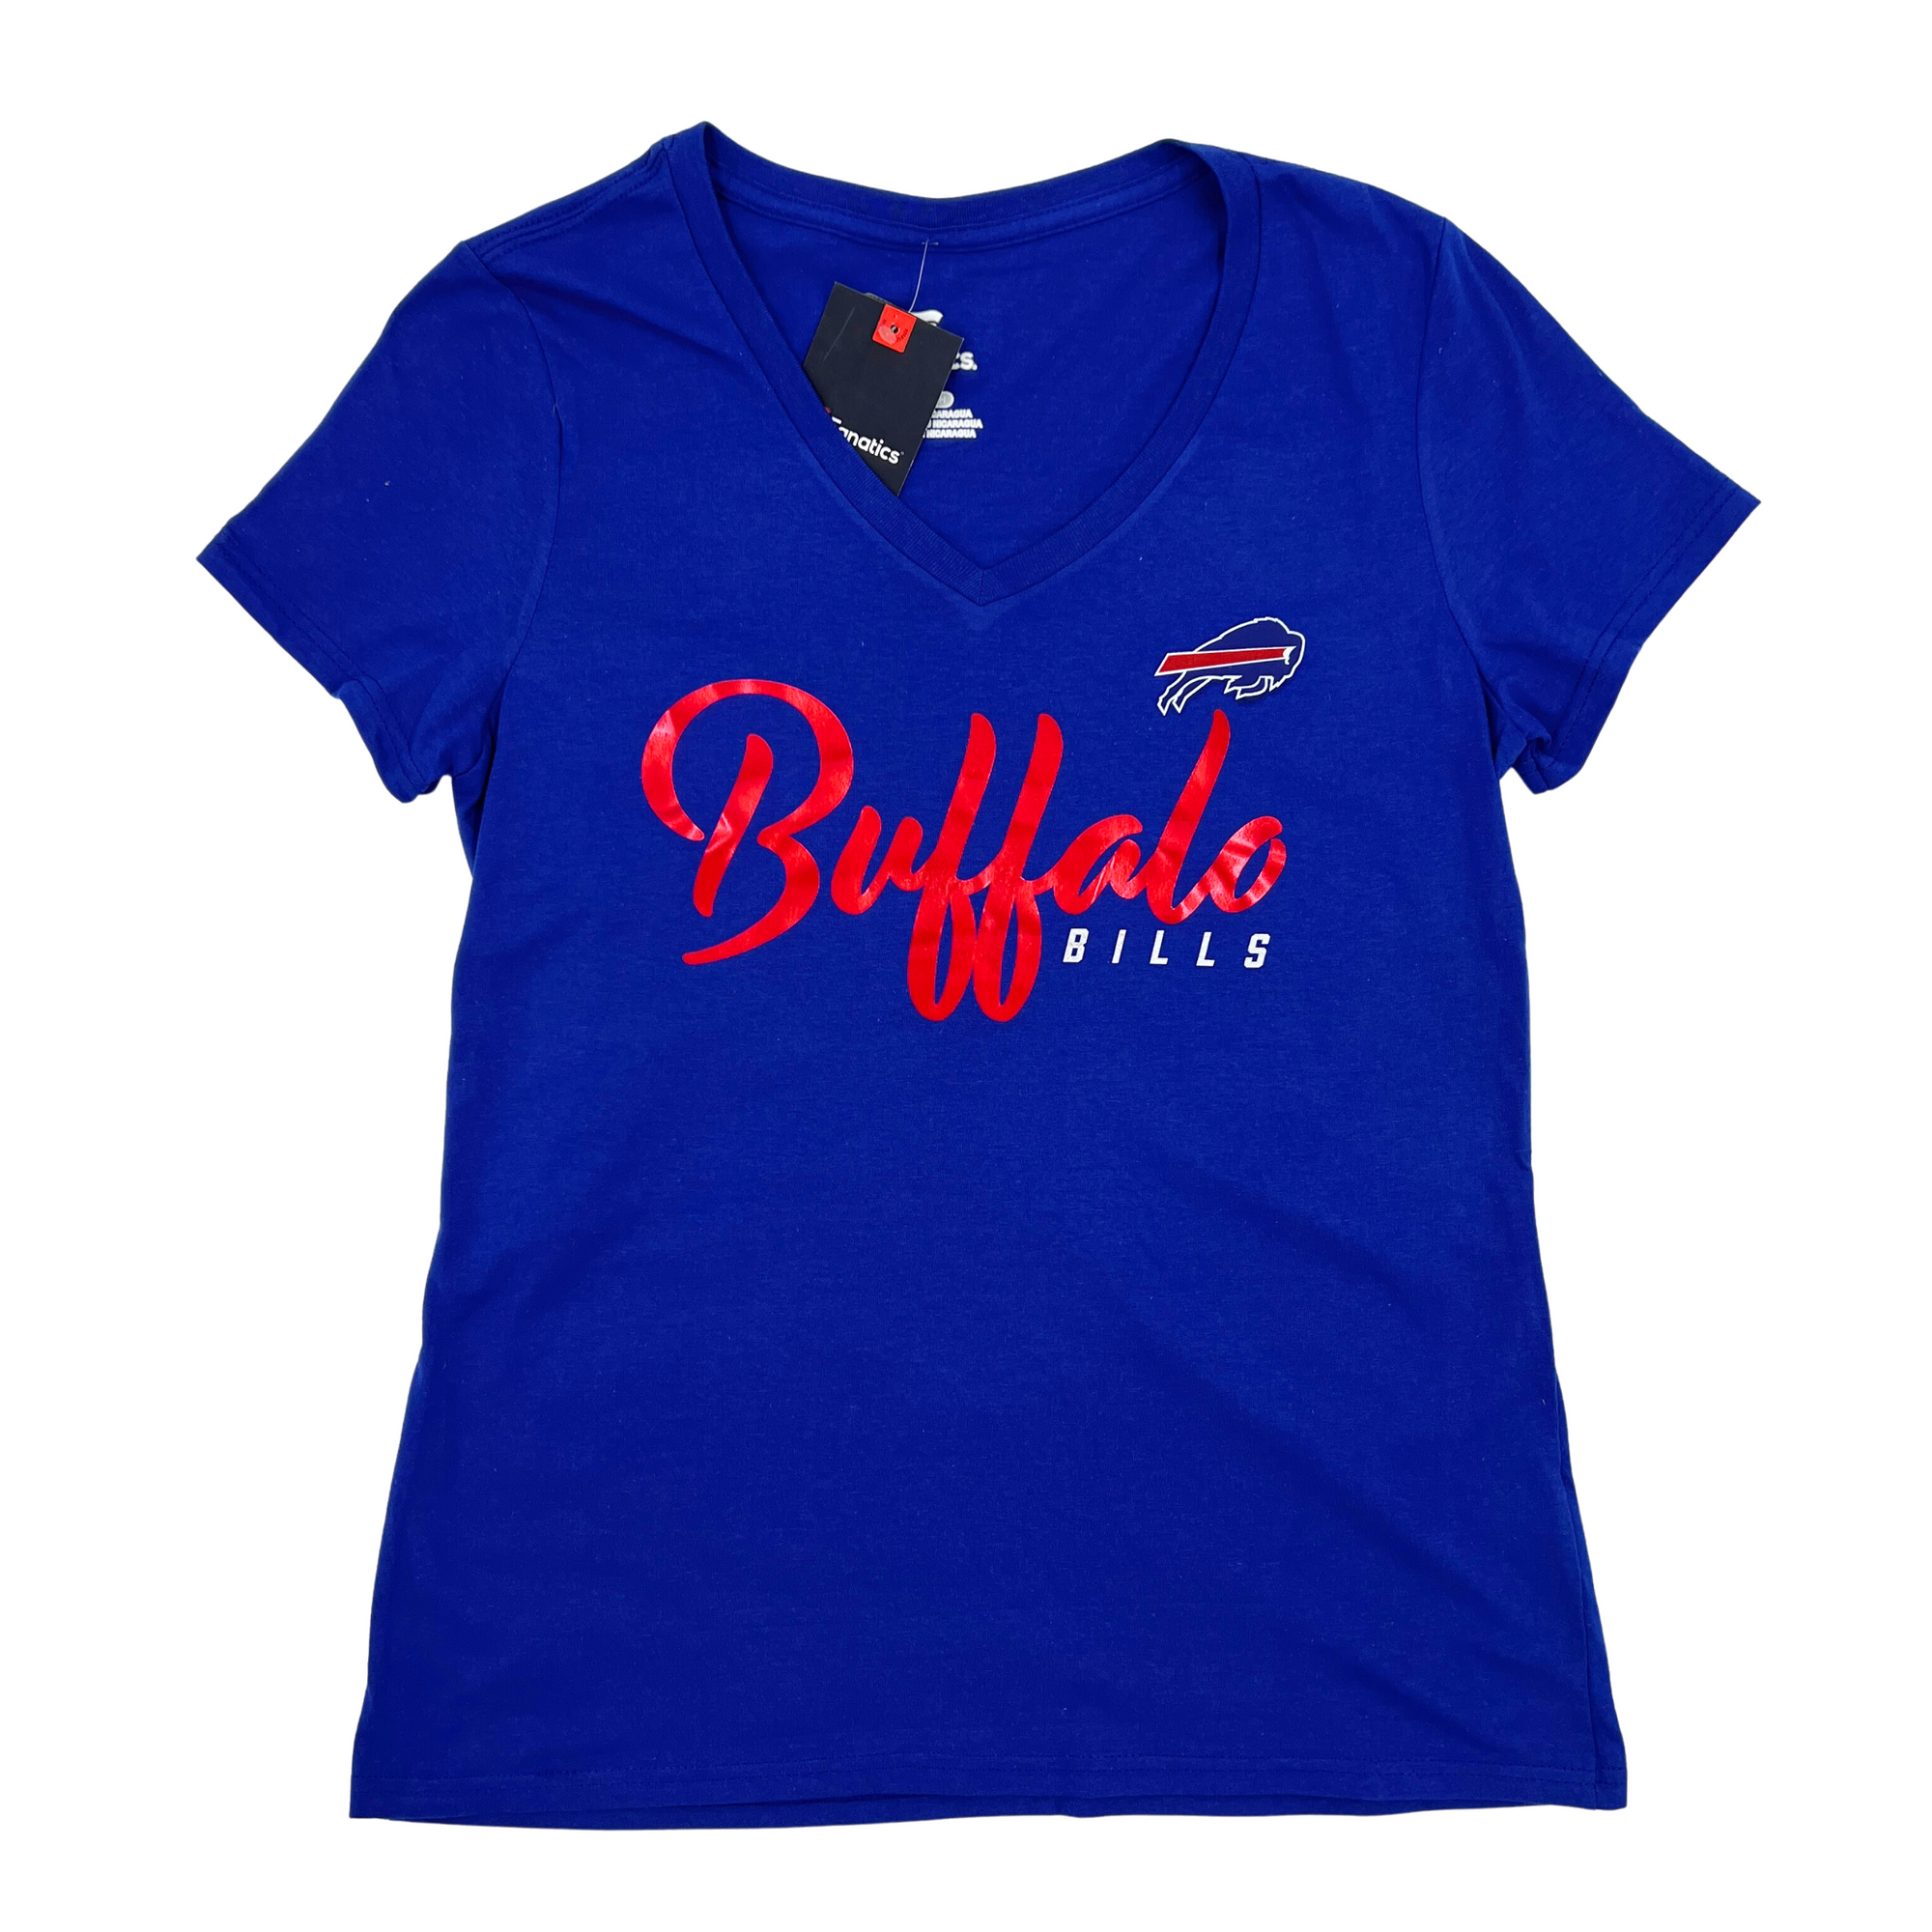  Buffalo Bills Tshirt